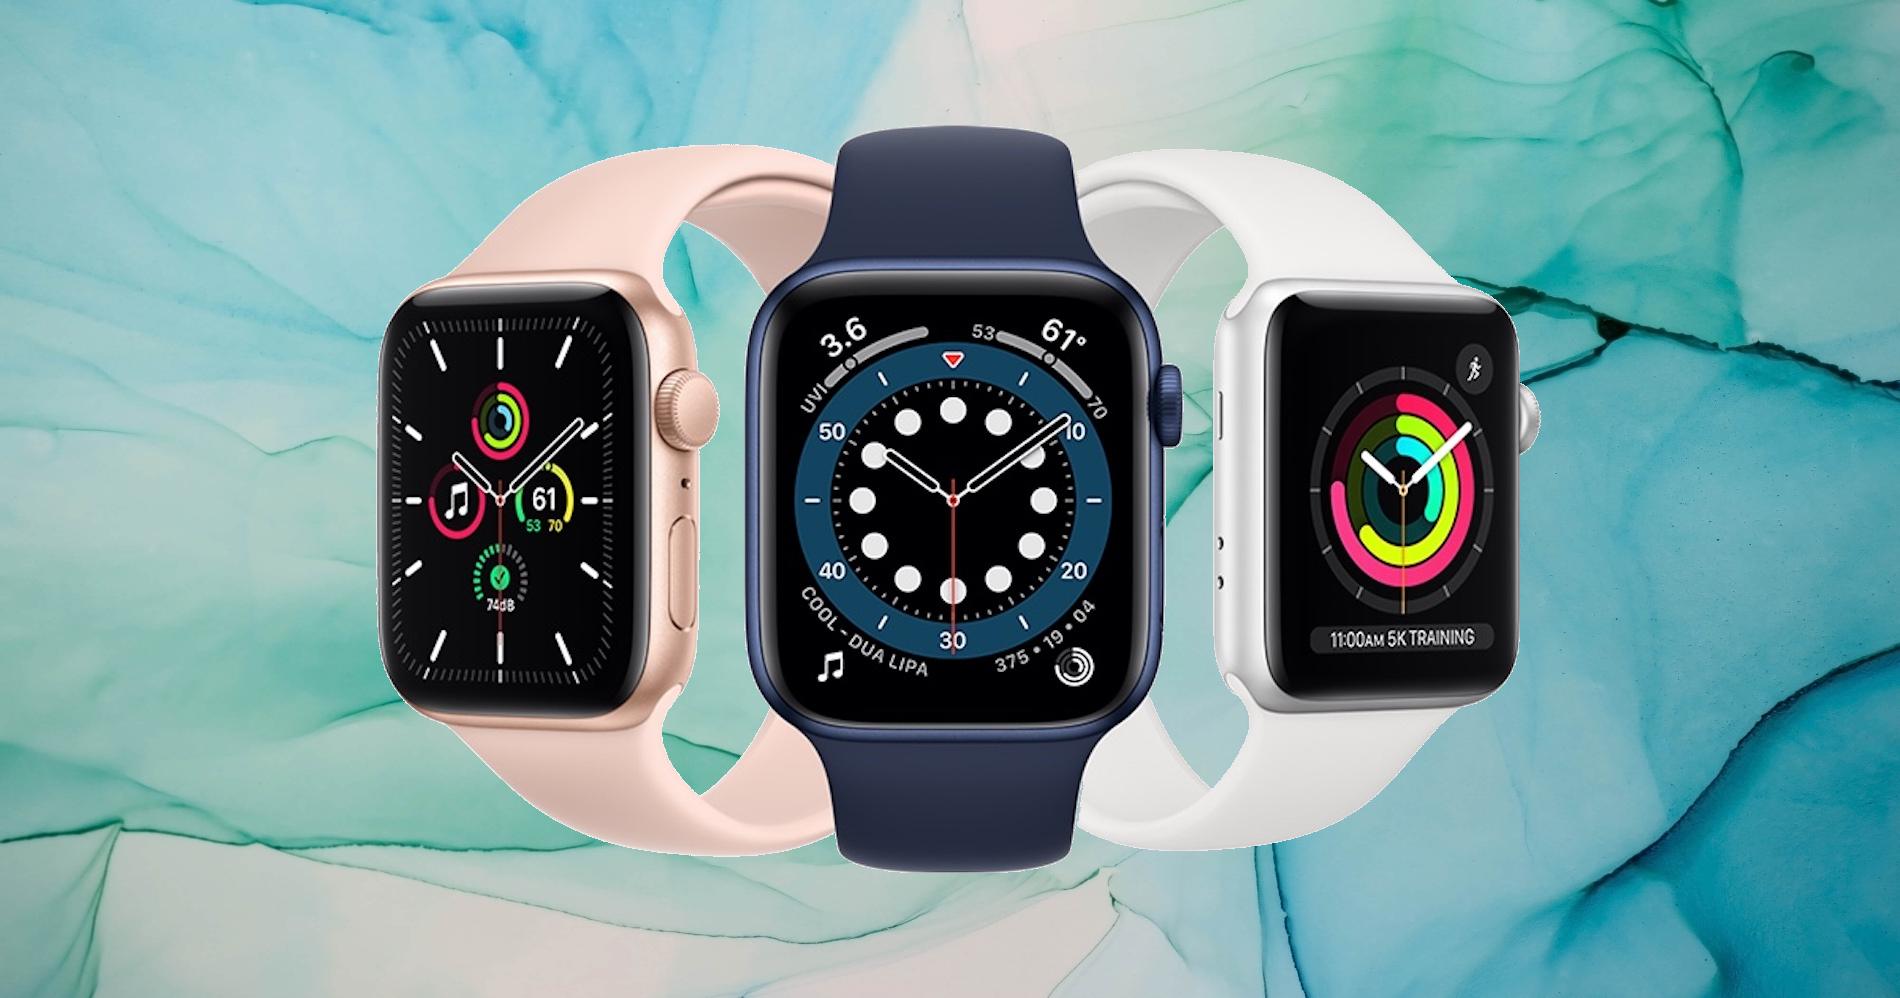 Co všechno umí Apple Watch?